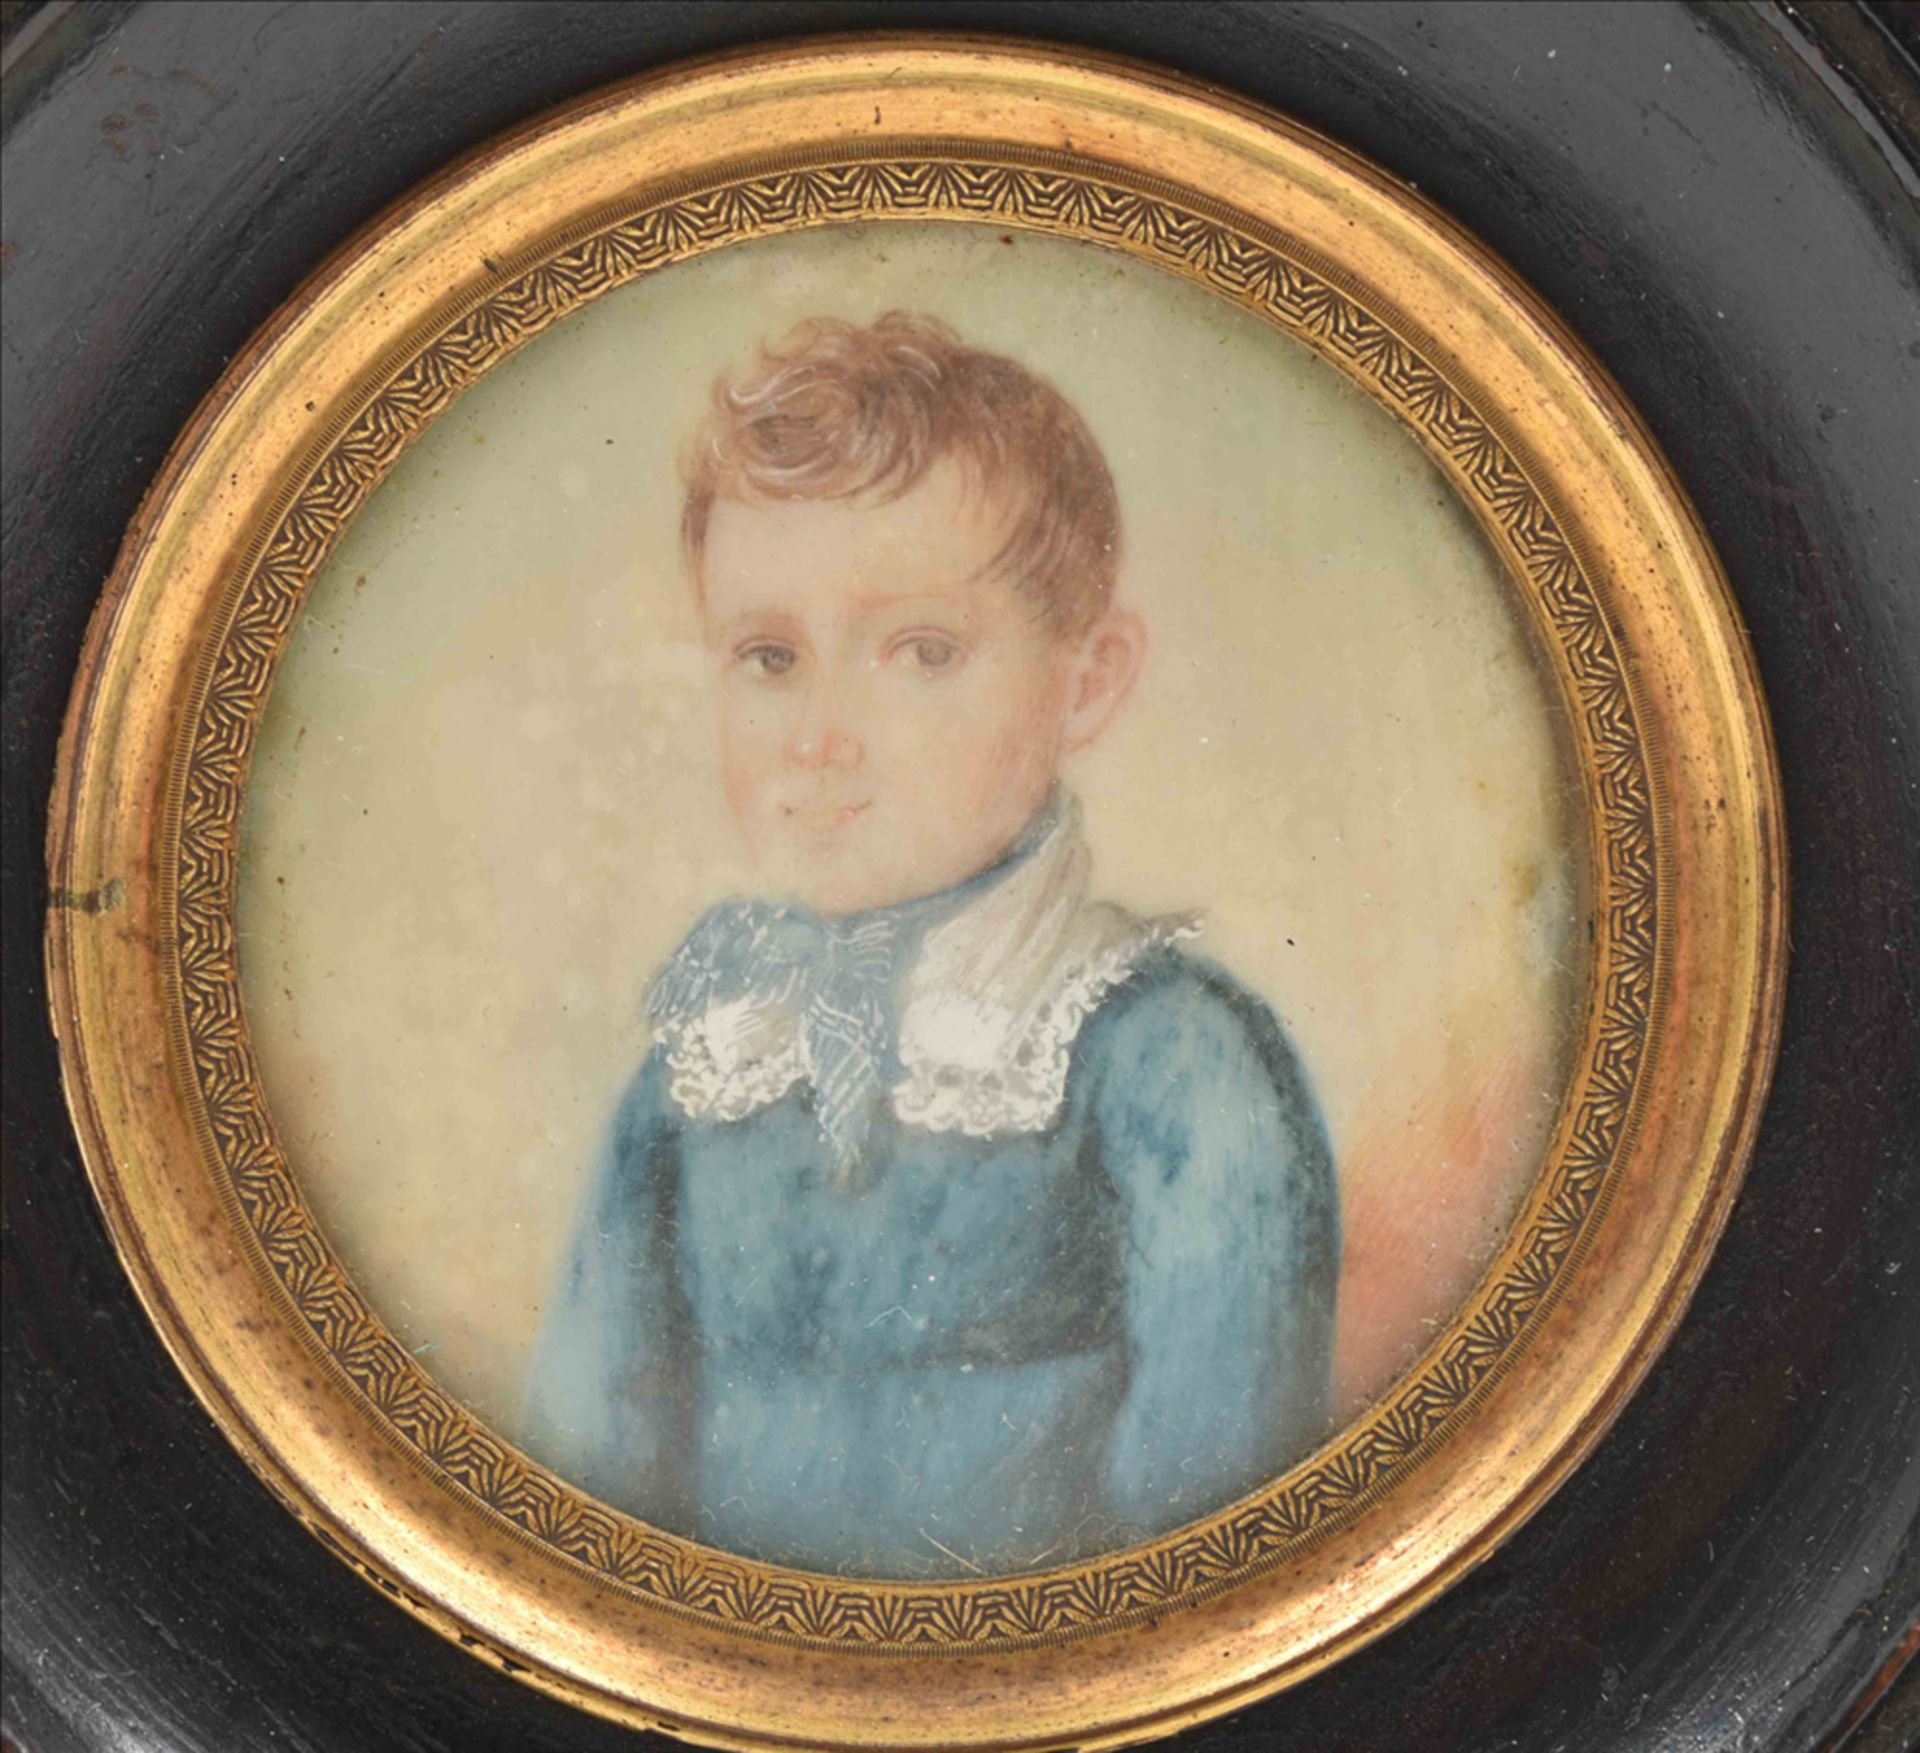 Portrait of Wenceslaus Hendrikus ten Brink (1817-1901) as a 4-year-old